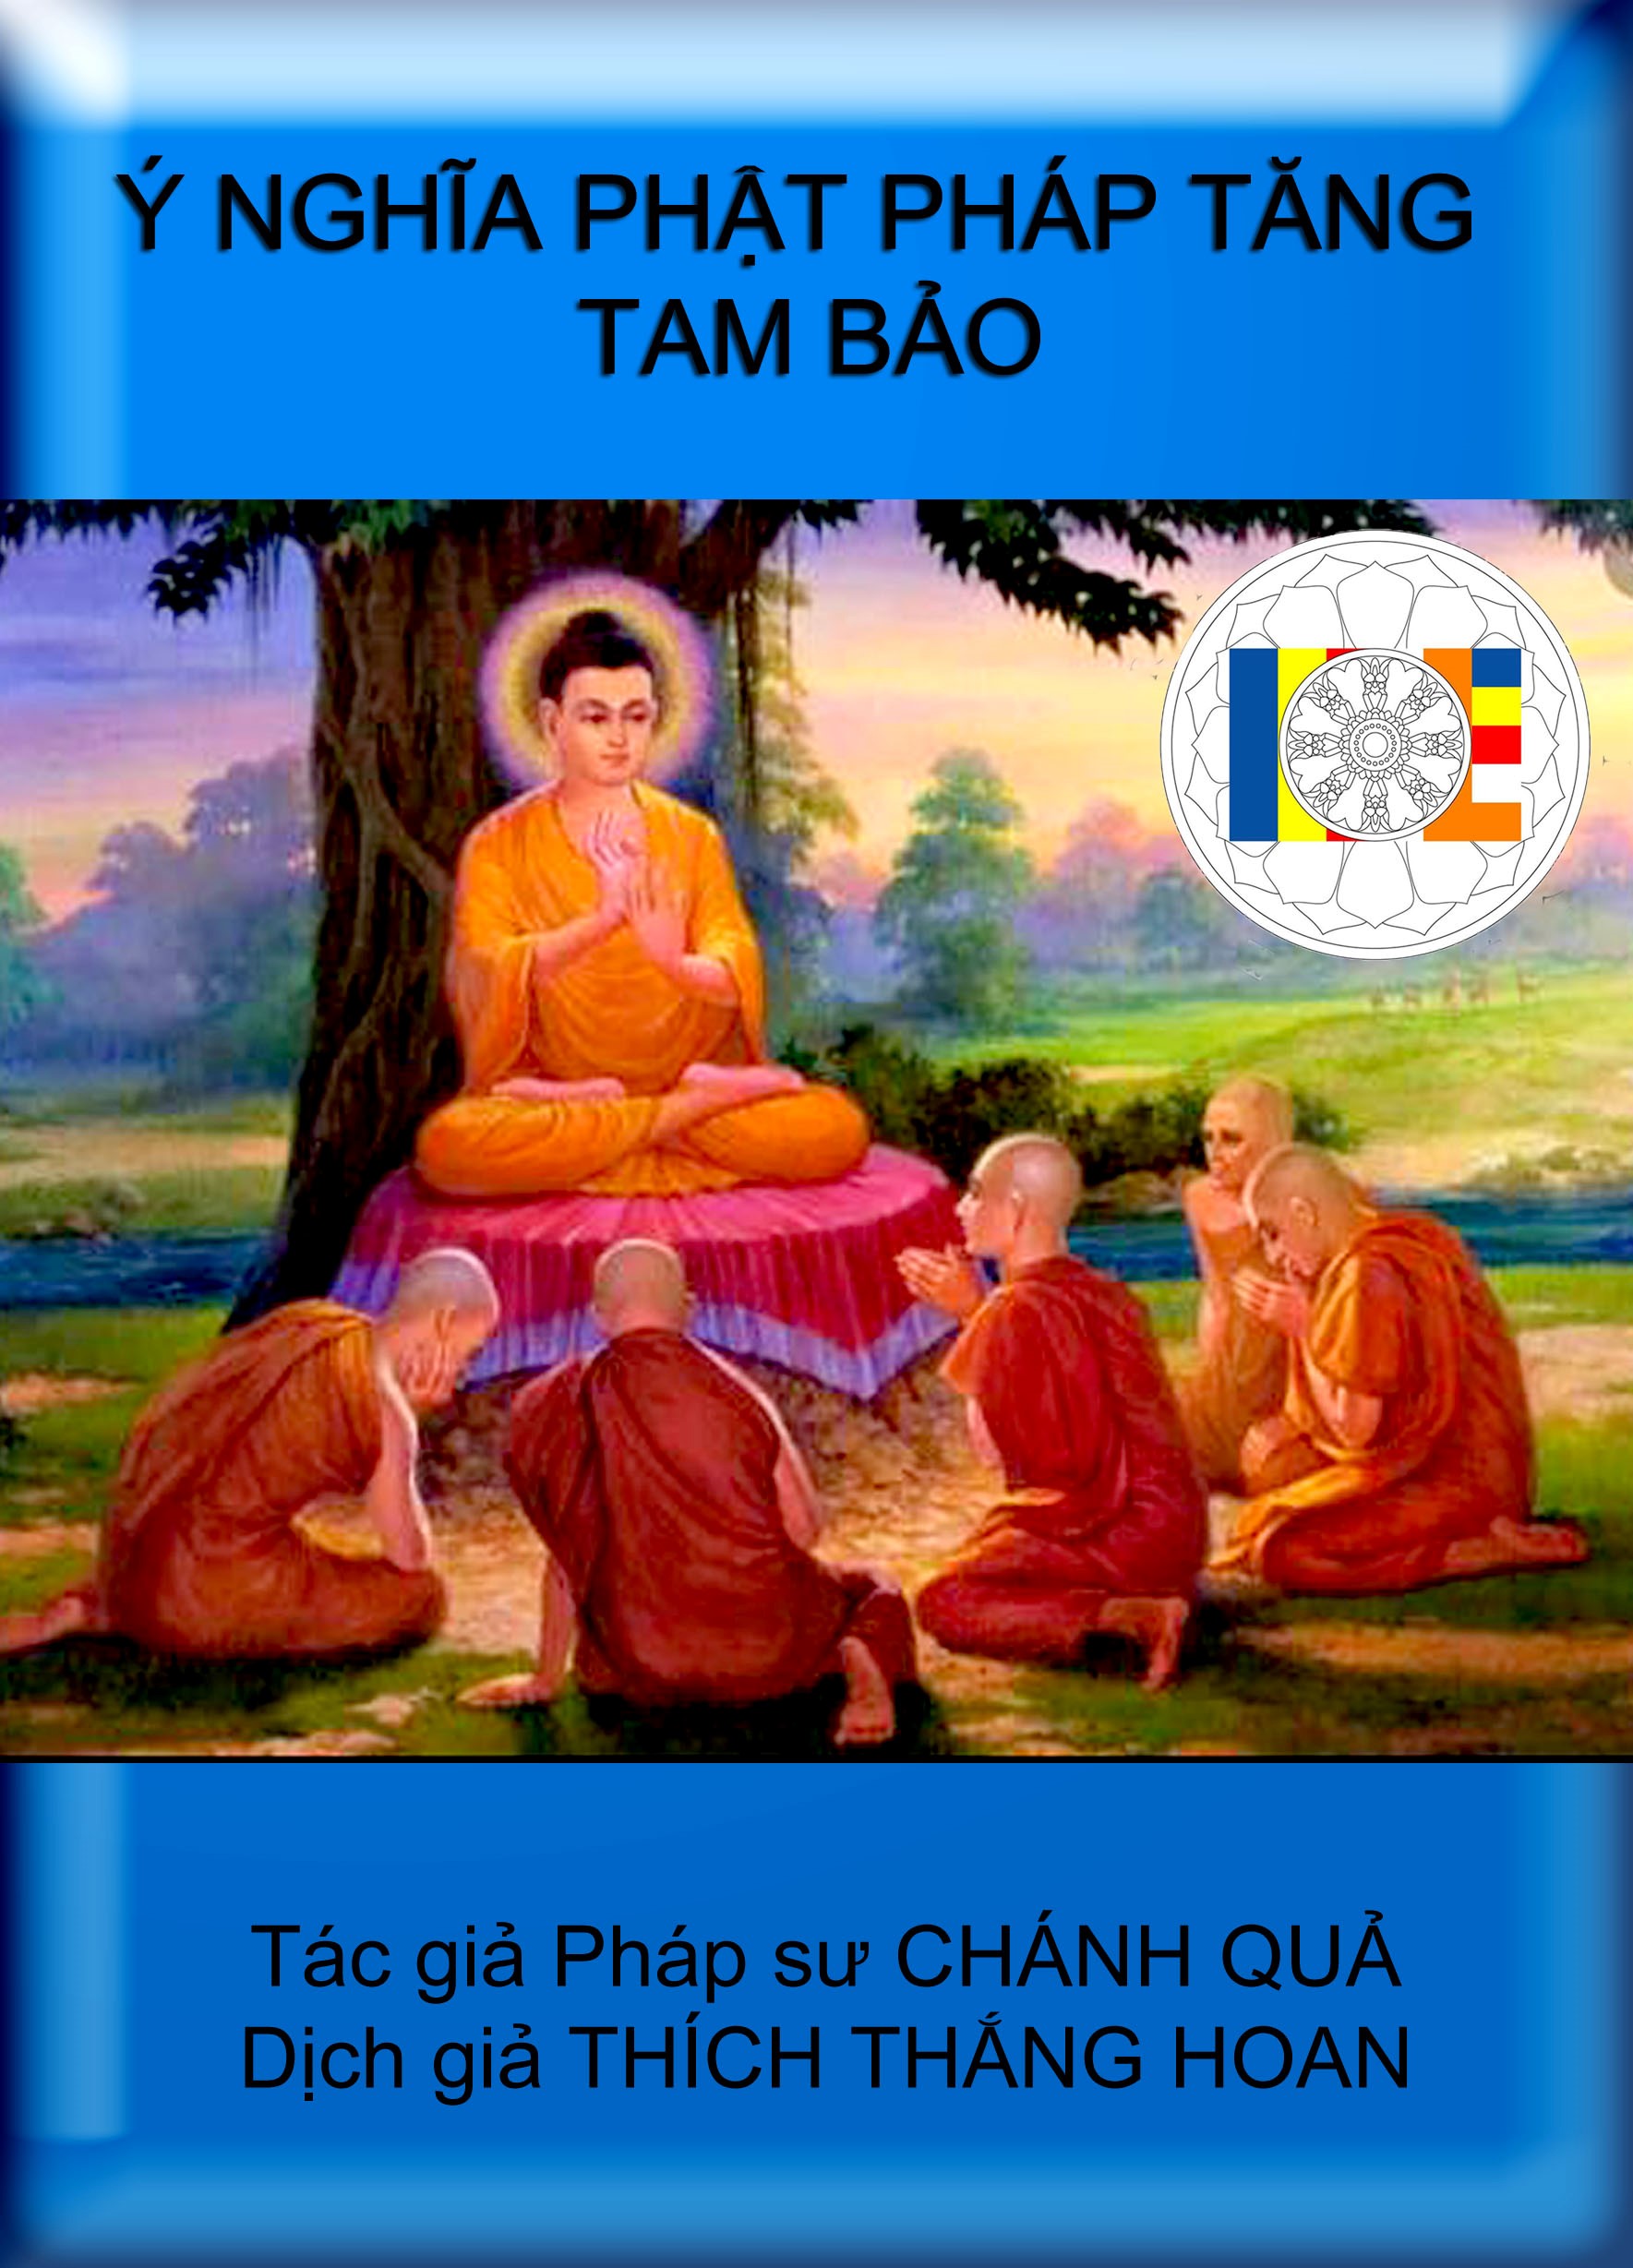 Phật Pháp Tăng: Hầu như không có gì vô cùng thanh tịnh như bức ảnh về Phật Pháp Tăng, sẽ giúp bạn cảm nhận được sự yên bình của đại biểu tâm linh của người tham quan và mang đến những suy tư vô cùng ý nghĩa cho đời sống của chúng ta.